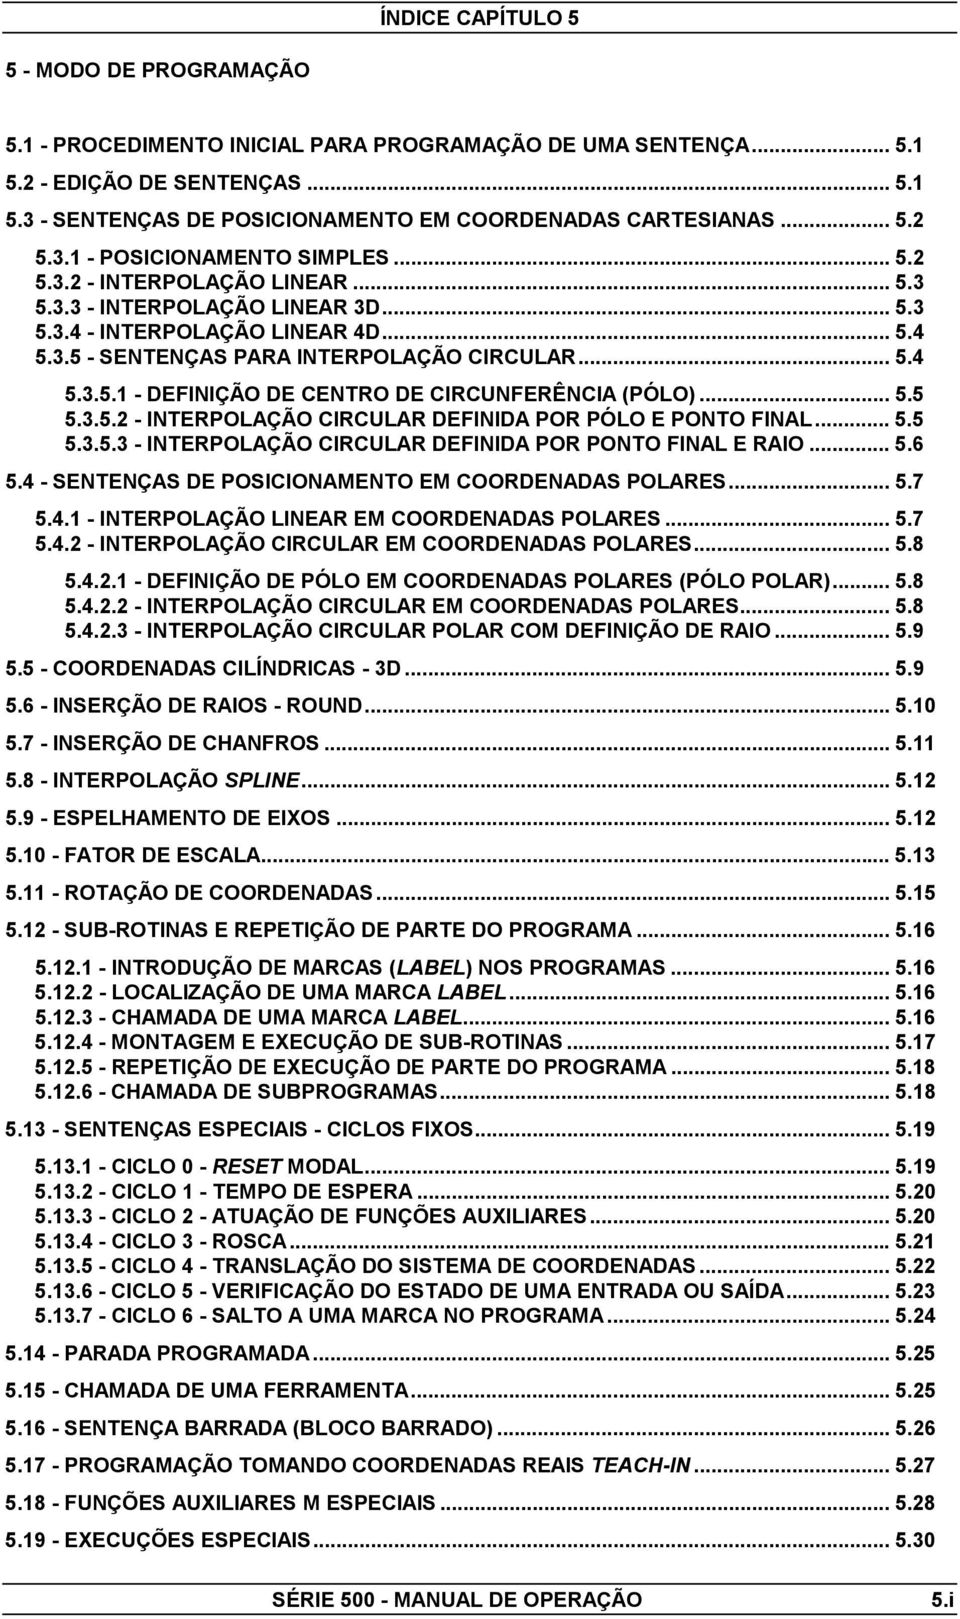 .. 5.4 5.3.5.1 - DEFINIÇÃO DE CENTRO DE CIRCUNFERÊNCIA (PÓLO)... 5.5 5.3.5.2 - INTERPOLAÇÃO CIRCULAR DEFINIDA POR PÓLO E PONTO FINAL... 5.5 5.3.5.3 - INTERPOLAÇÃO CIRCULAR DEFINIDA POR PONTO FINAL E RAIO.